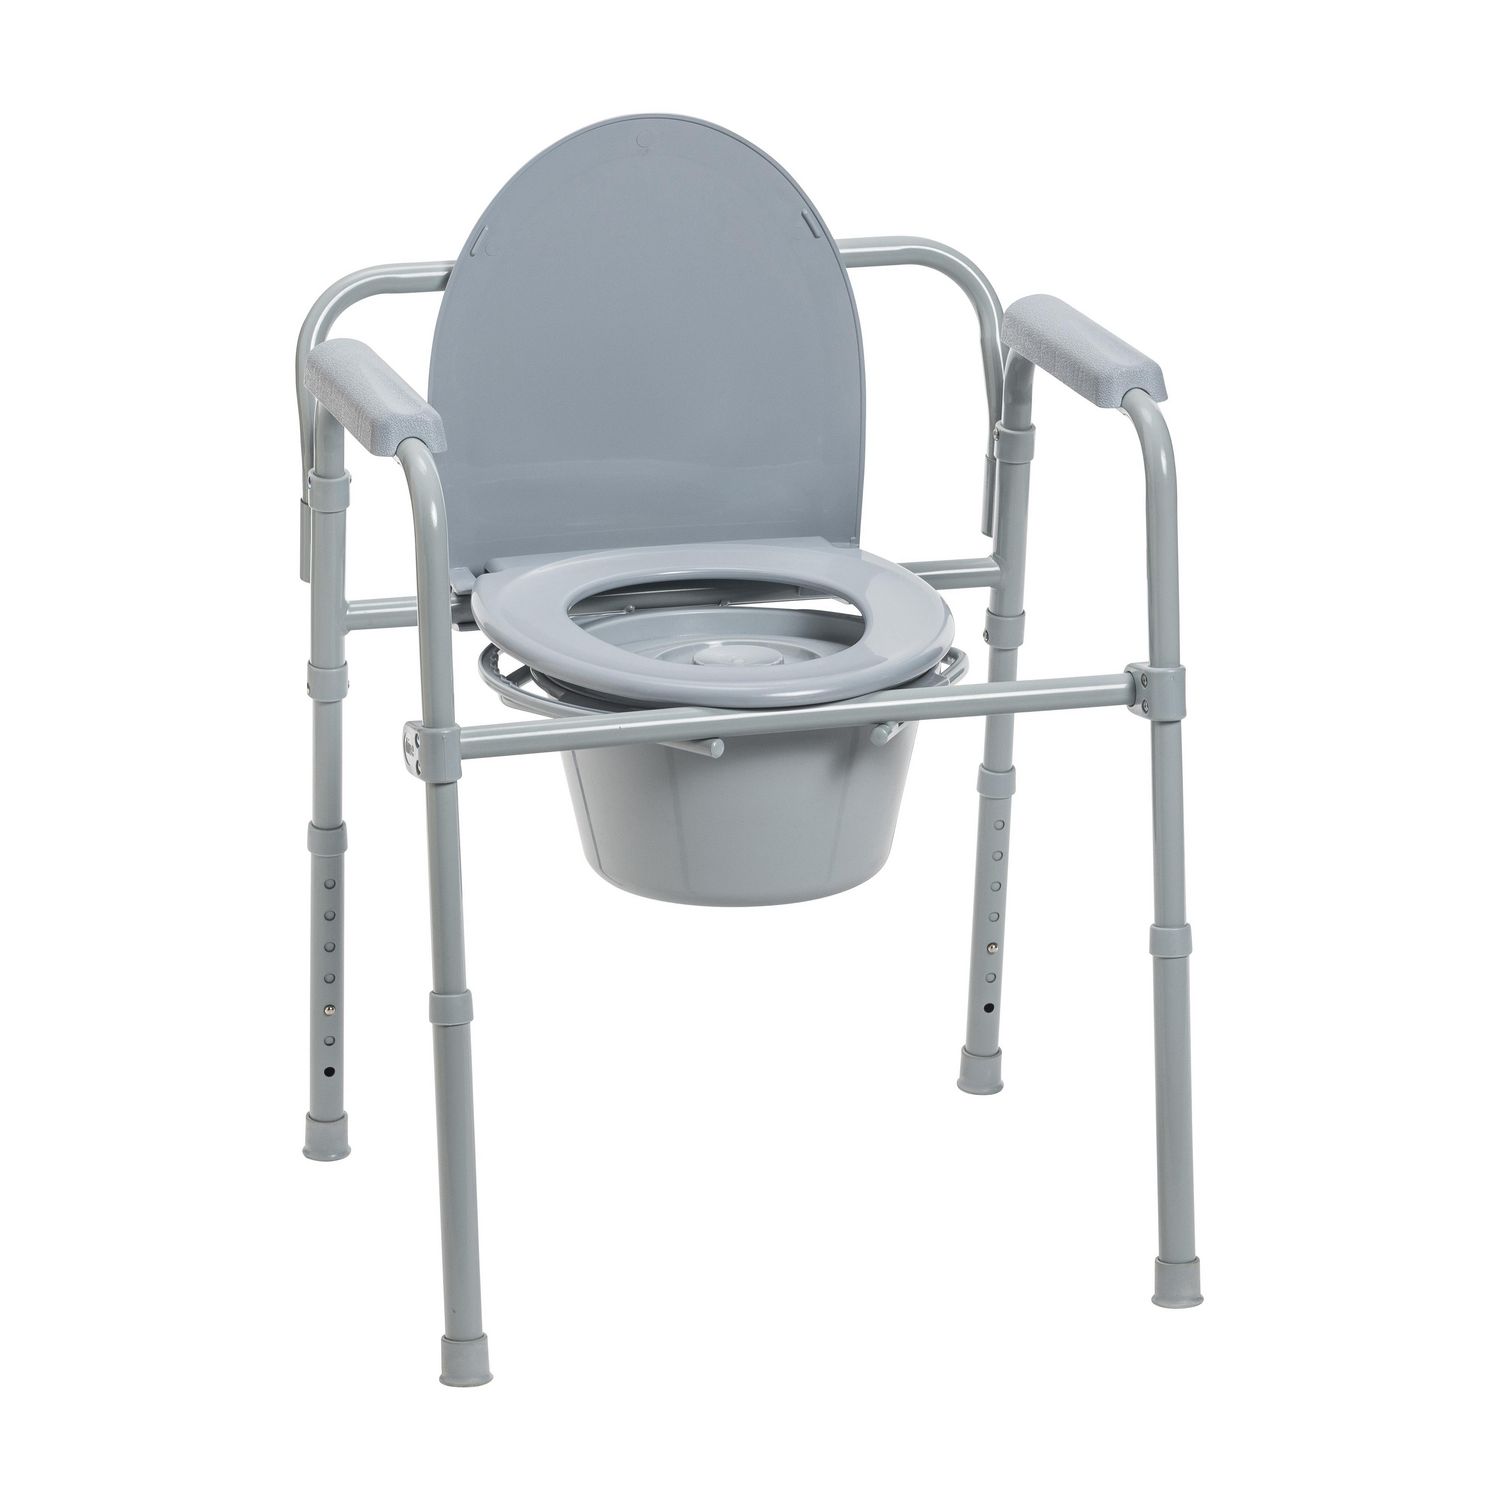 Chaise d'aisance de salle de bain adulte en aluminium,Low Prices Chaise d' aisance de salle de bain adulte en aluminium Achats